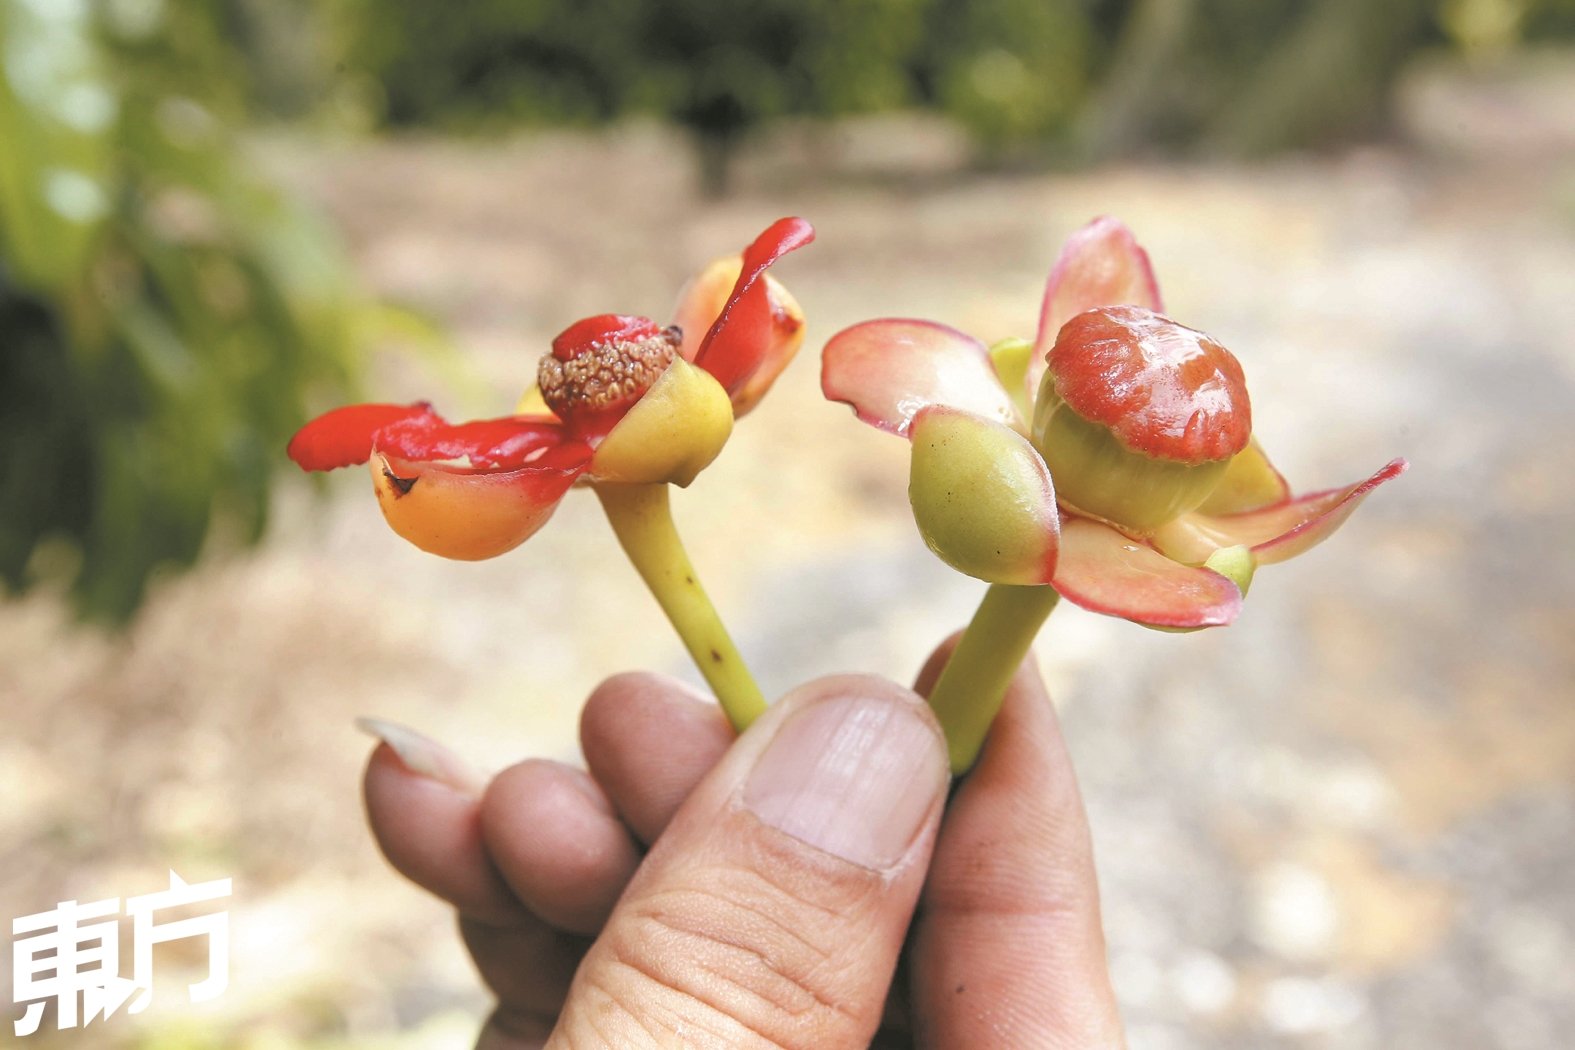 左为亚参果树的雄花，中间只有雄蕊不会结出果实， 右则为雌花，在授粉成功后可结出果实。